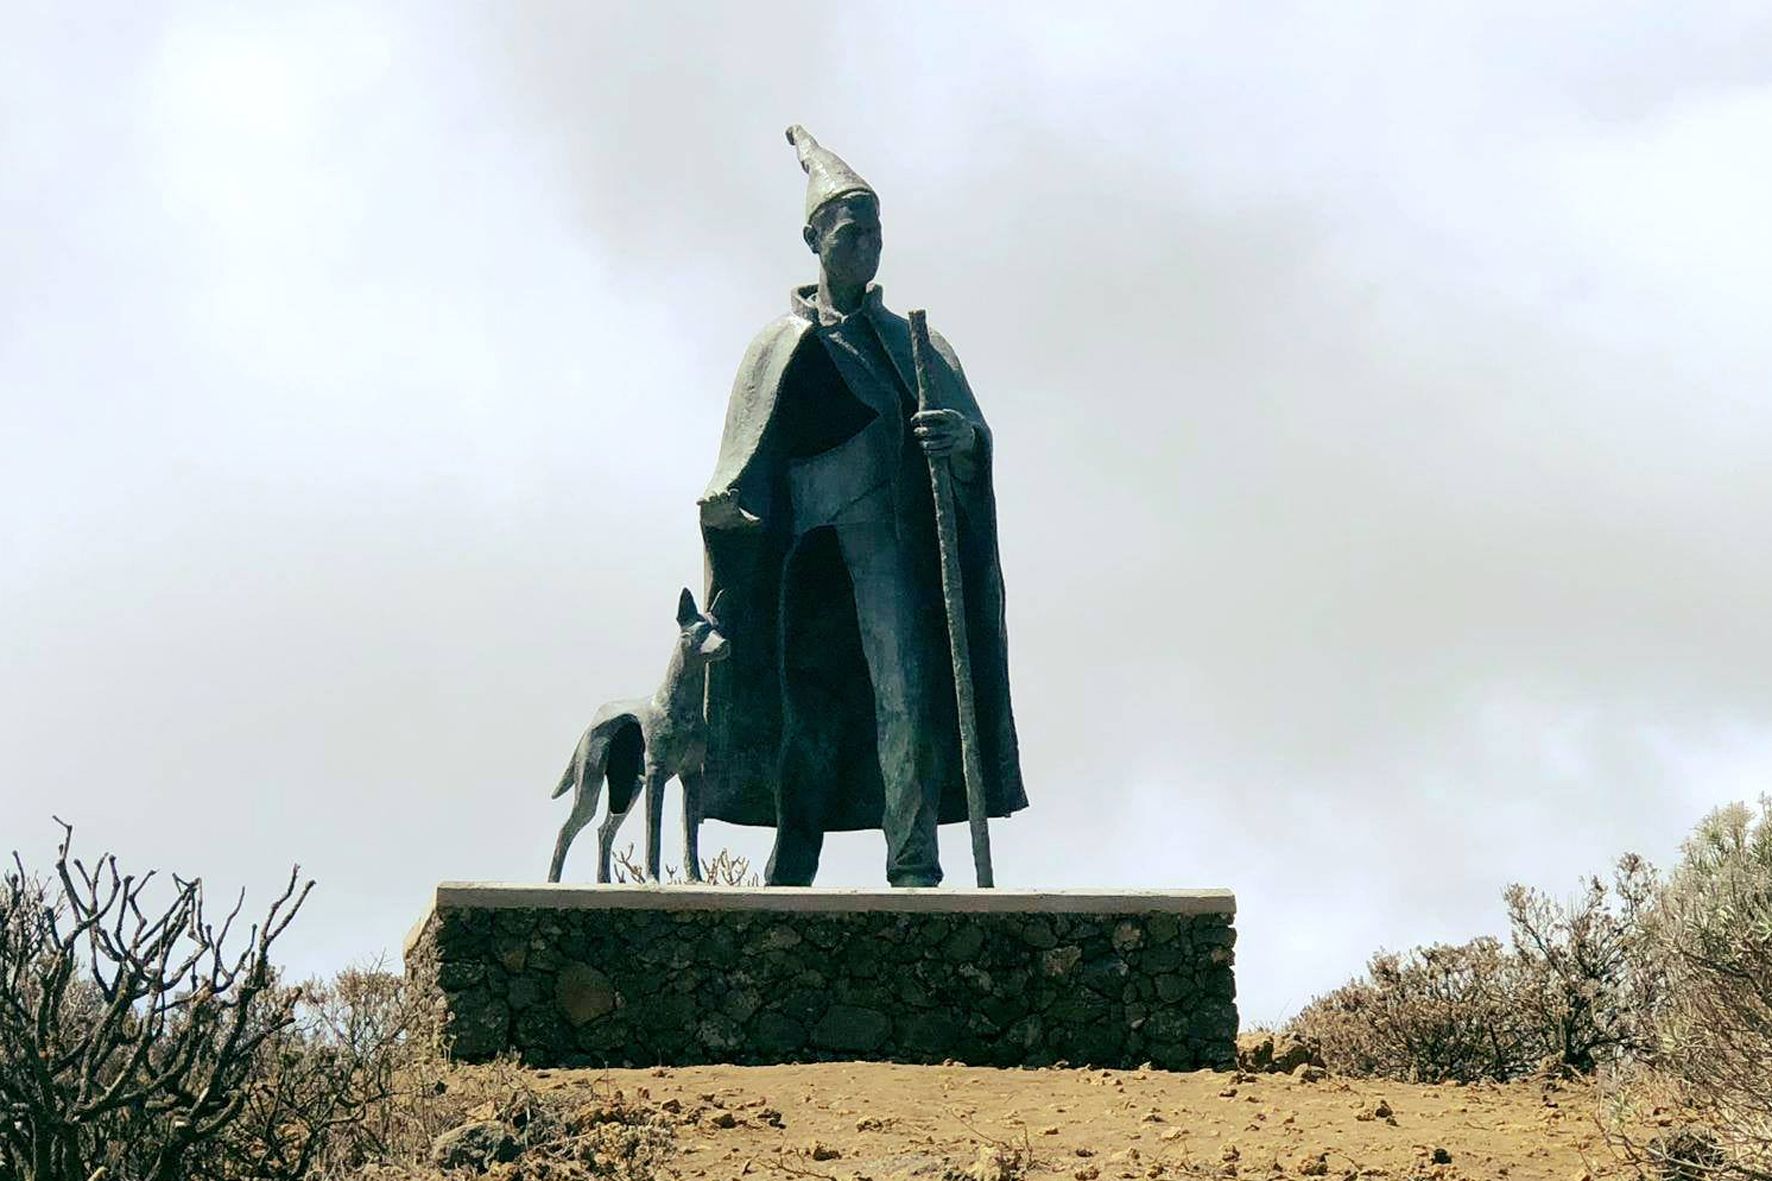 La Isla rinde homenaje al pastor herreño con una escultura obra de Manuel González